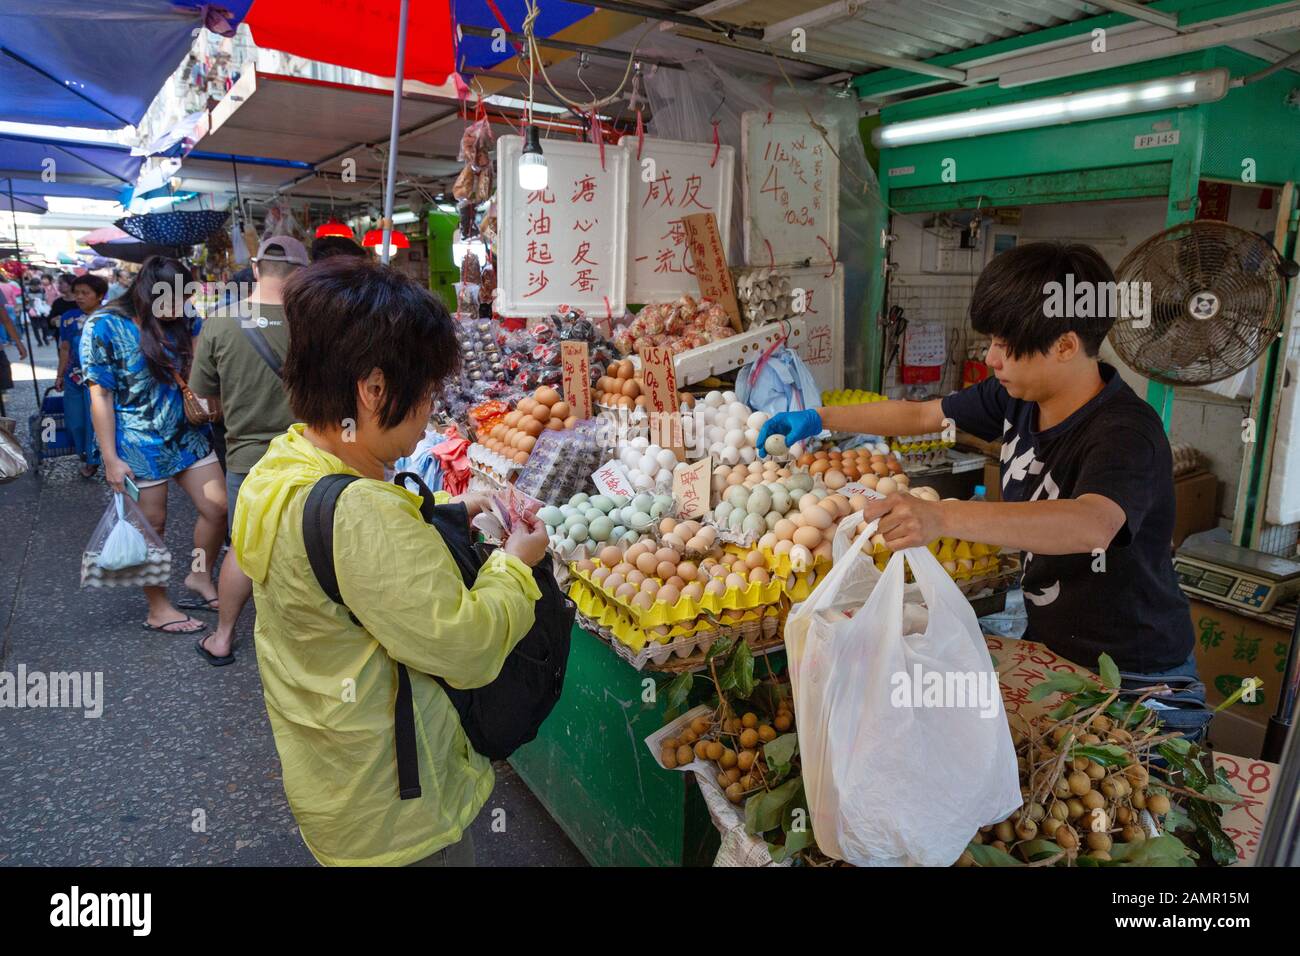 Style de vie asiatique; Les Gens qui achètent de la nourriture et des œufs dans un marché, Bowring Street, kowloon Hong Kong Asie Banque D'Images